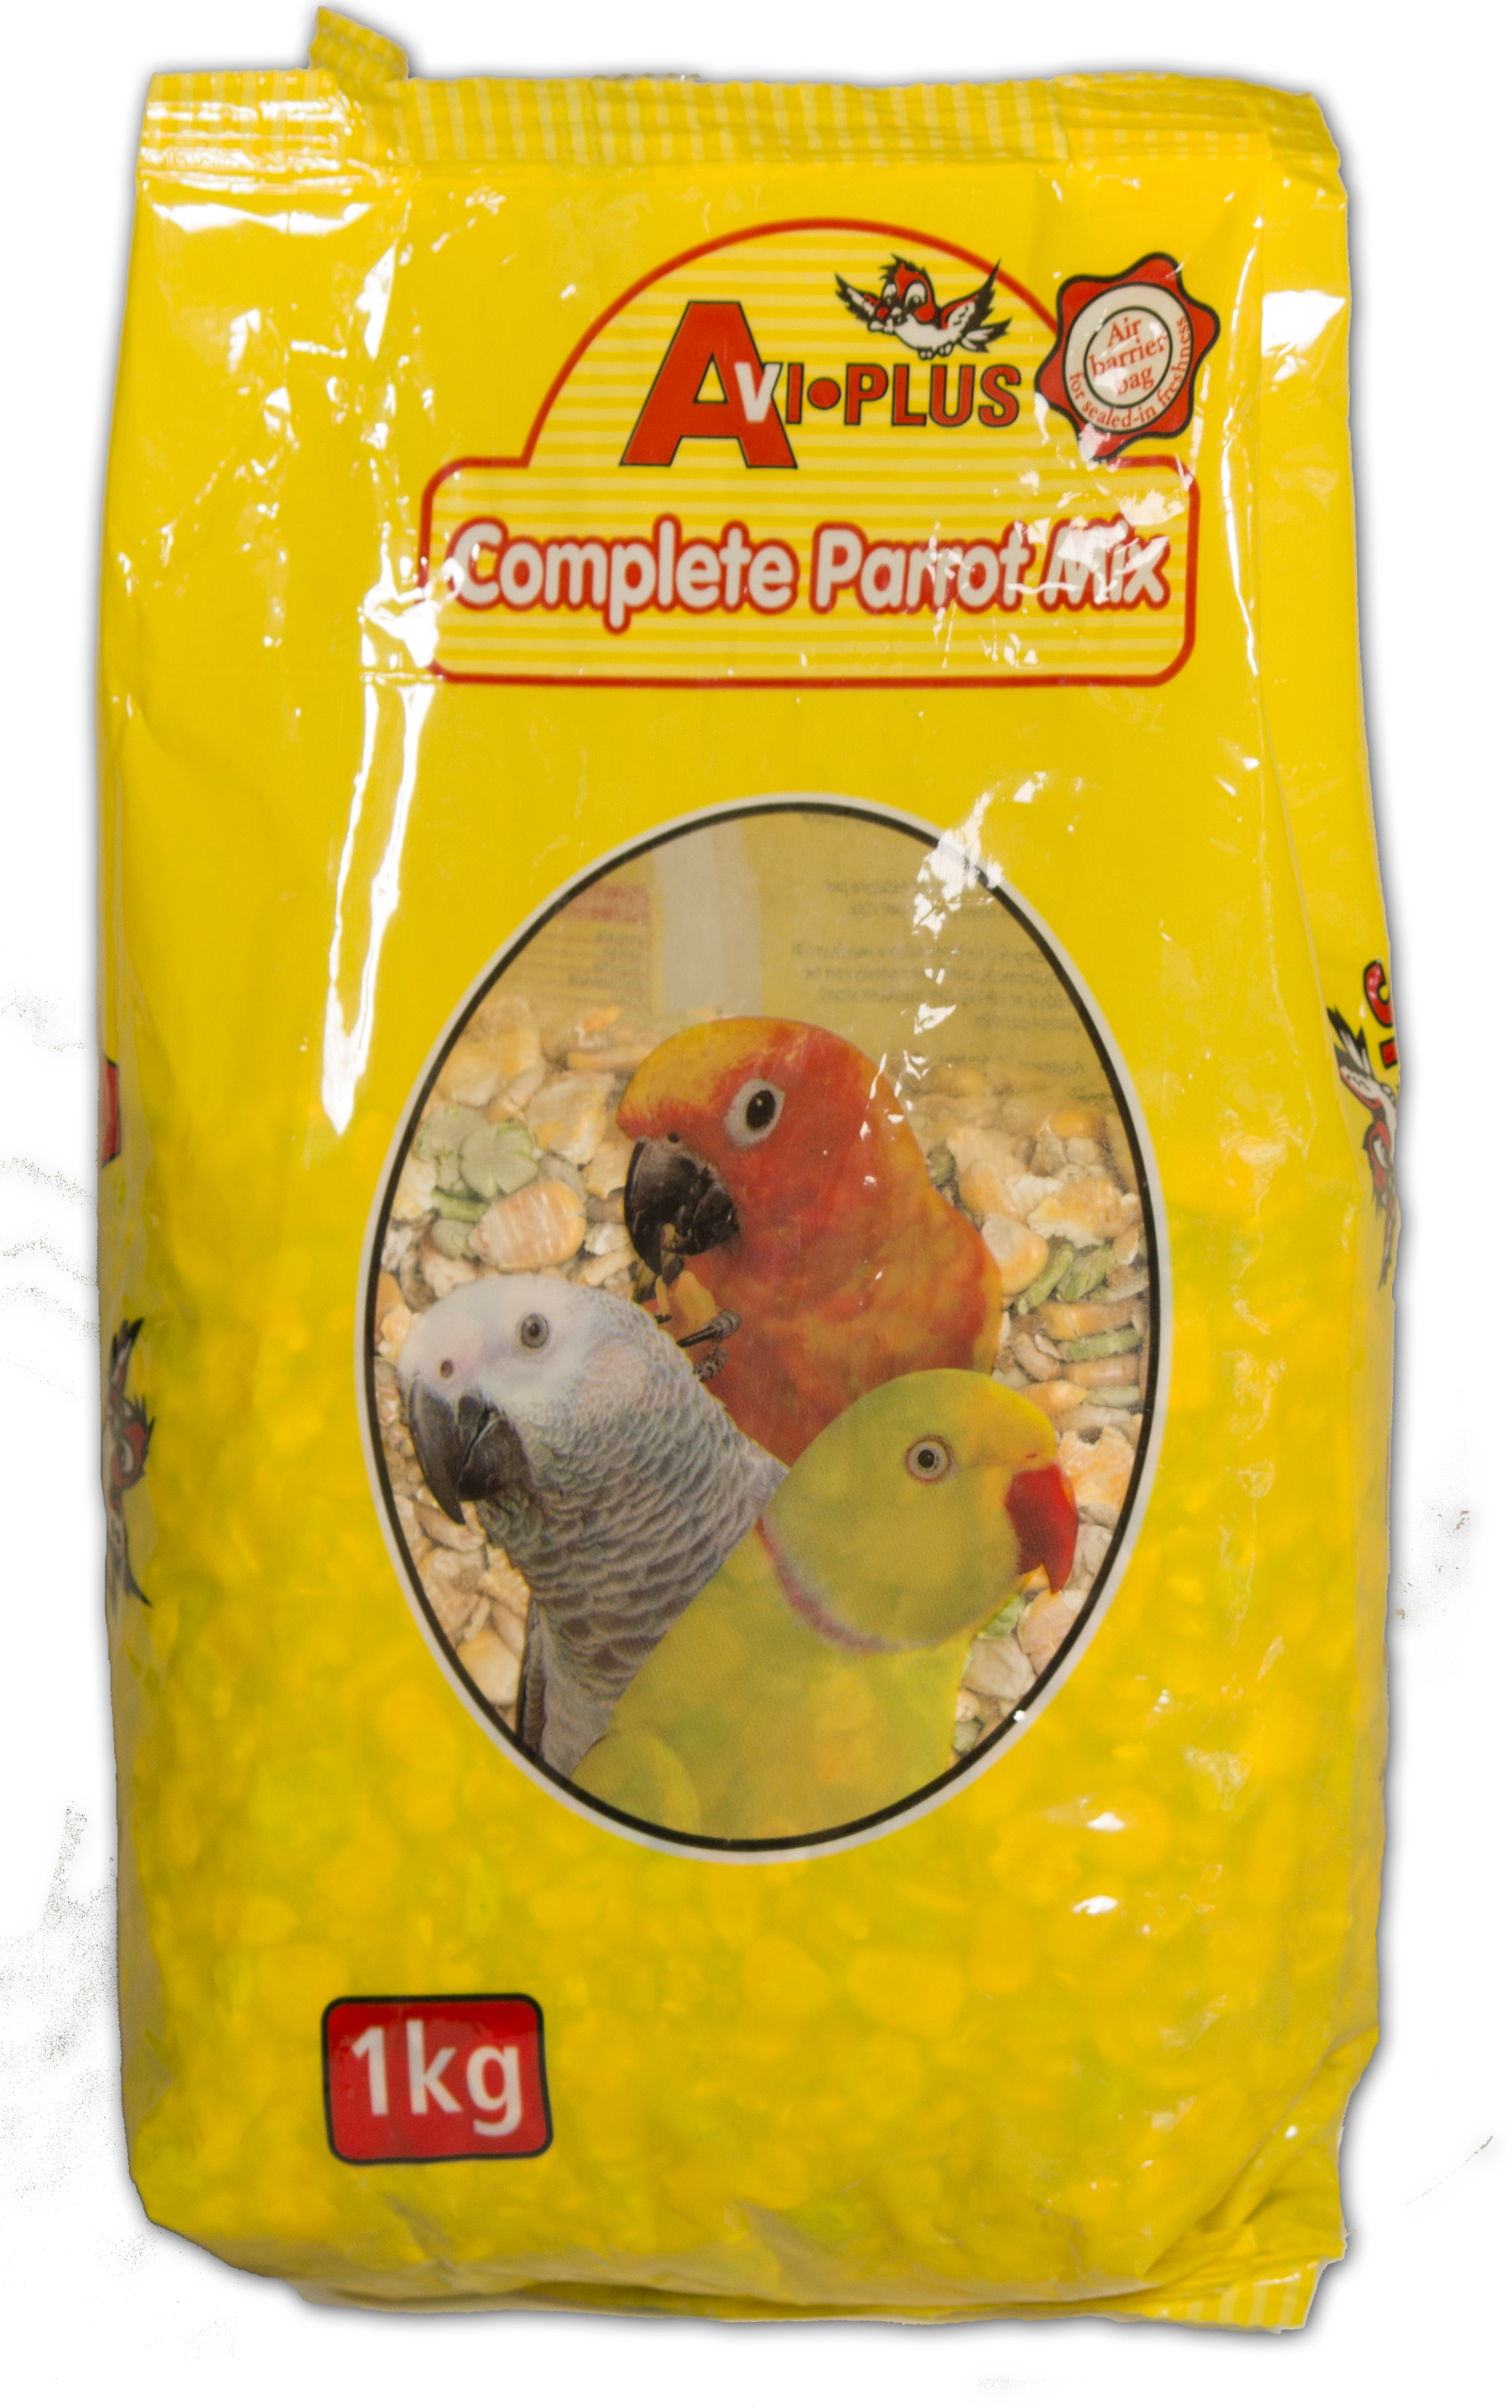 Avi Plus Complete Parrot Mix - 1kg